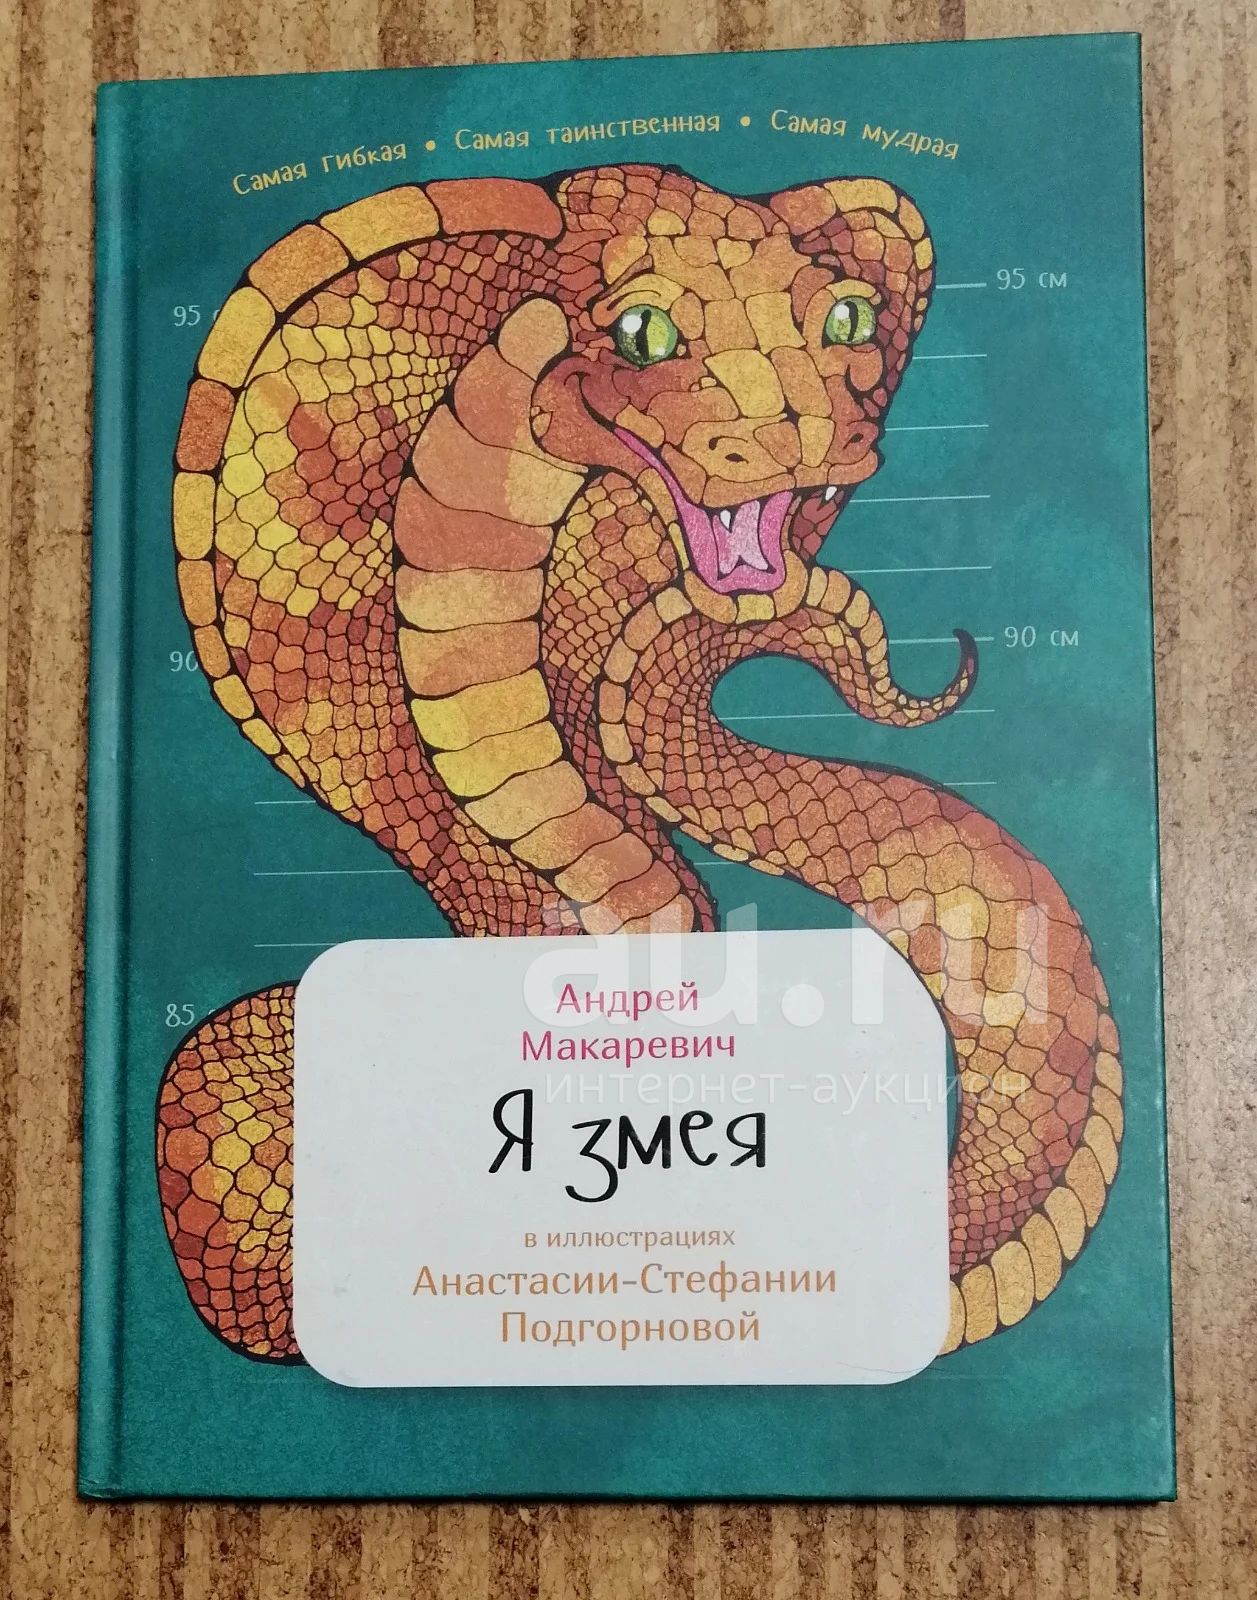 Книга про змея. Я змея. Я змея книга. Детские книги про змею.